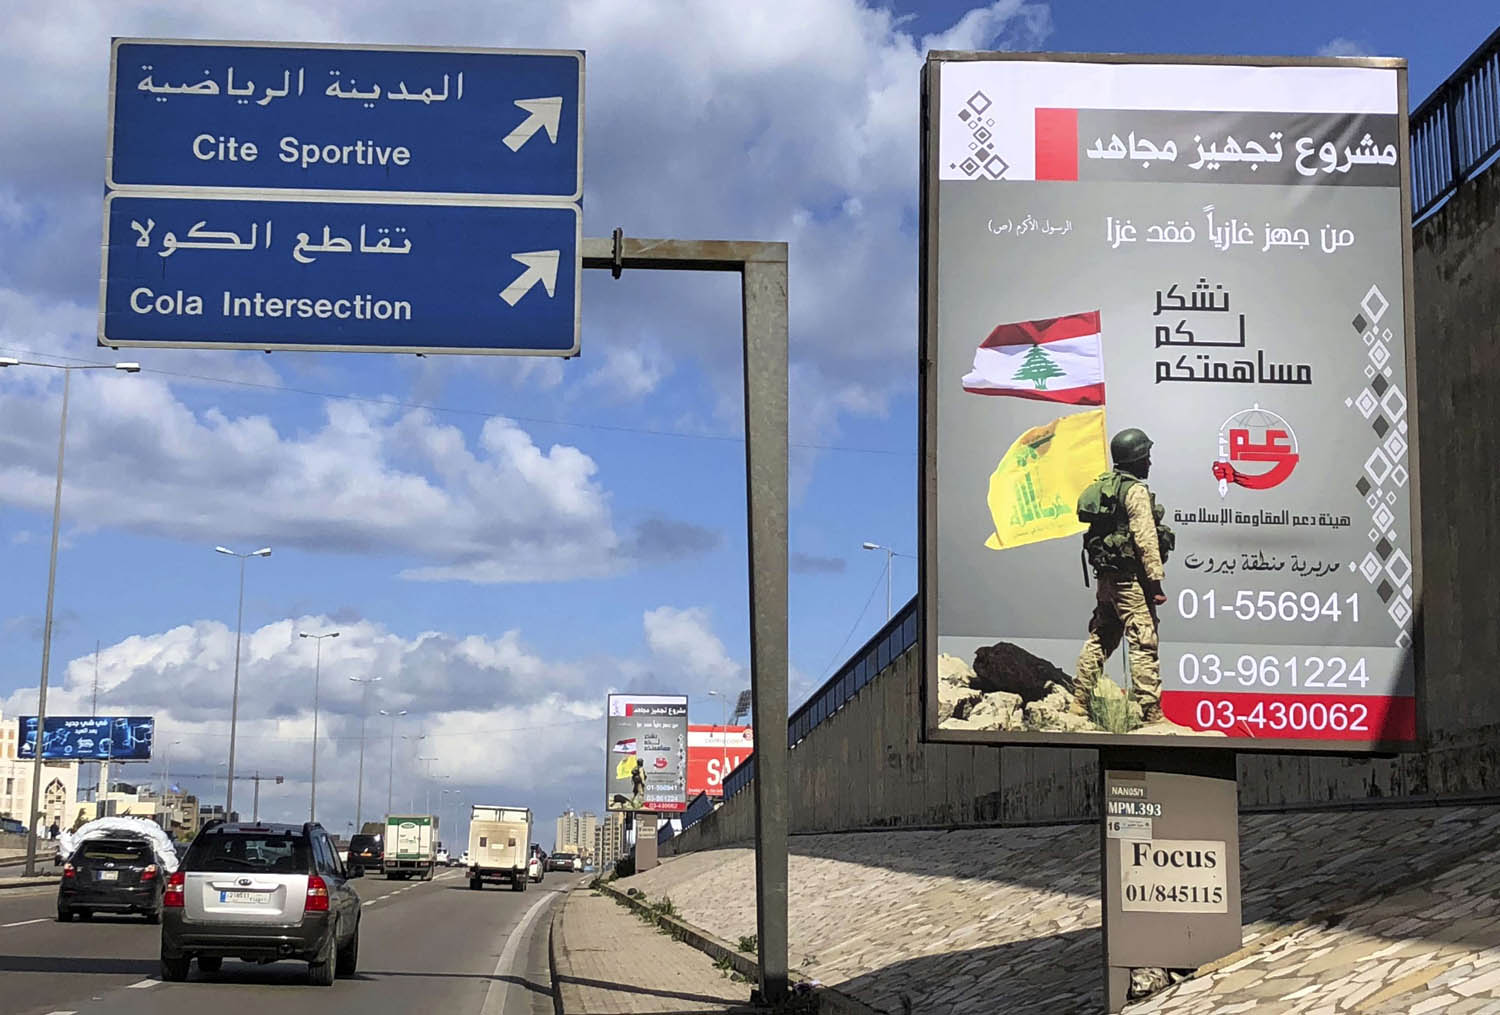 اعلان لحزب الله في بيروت يحث على توفير المال لشراء السلاح